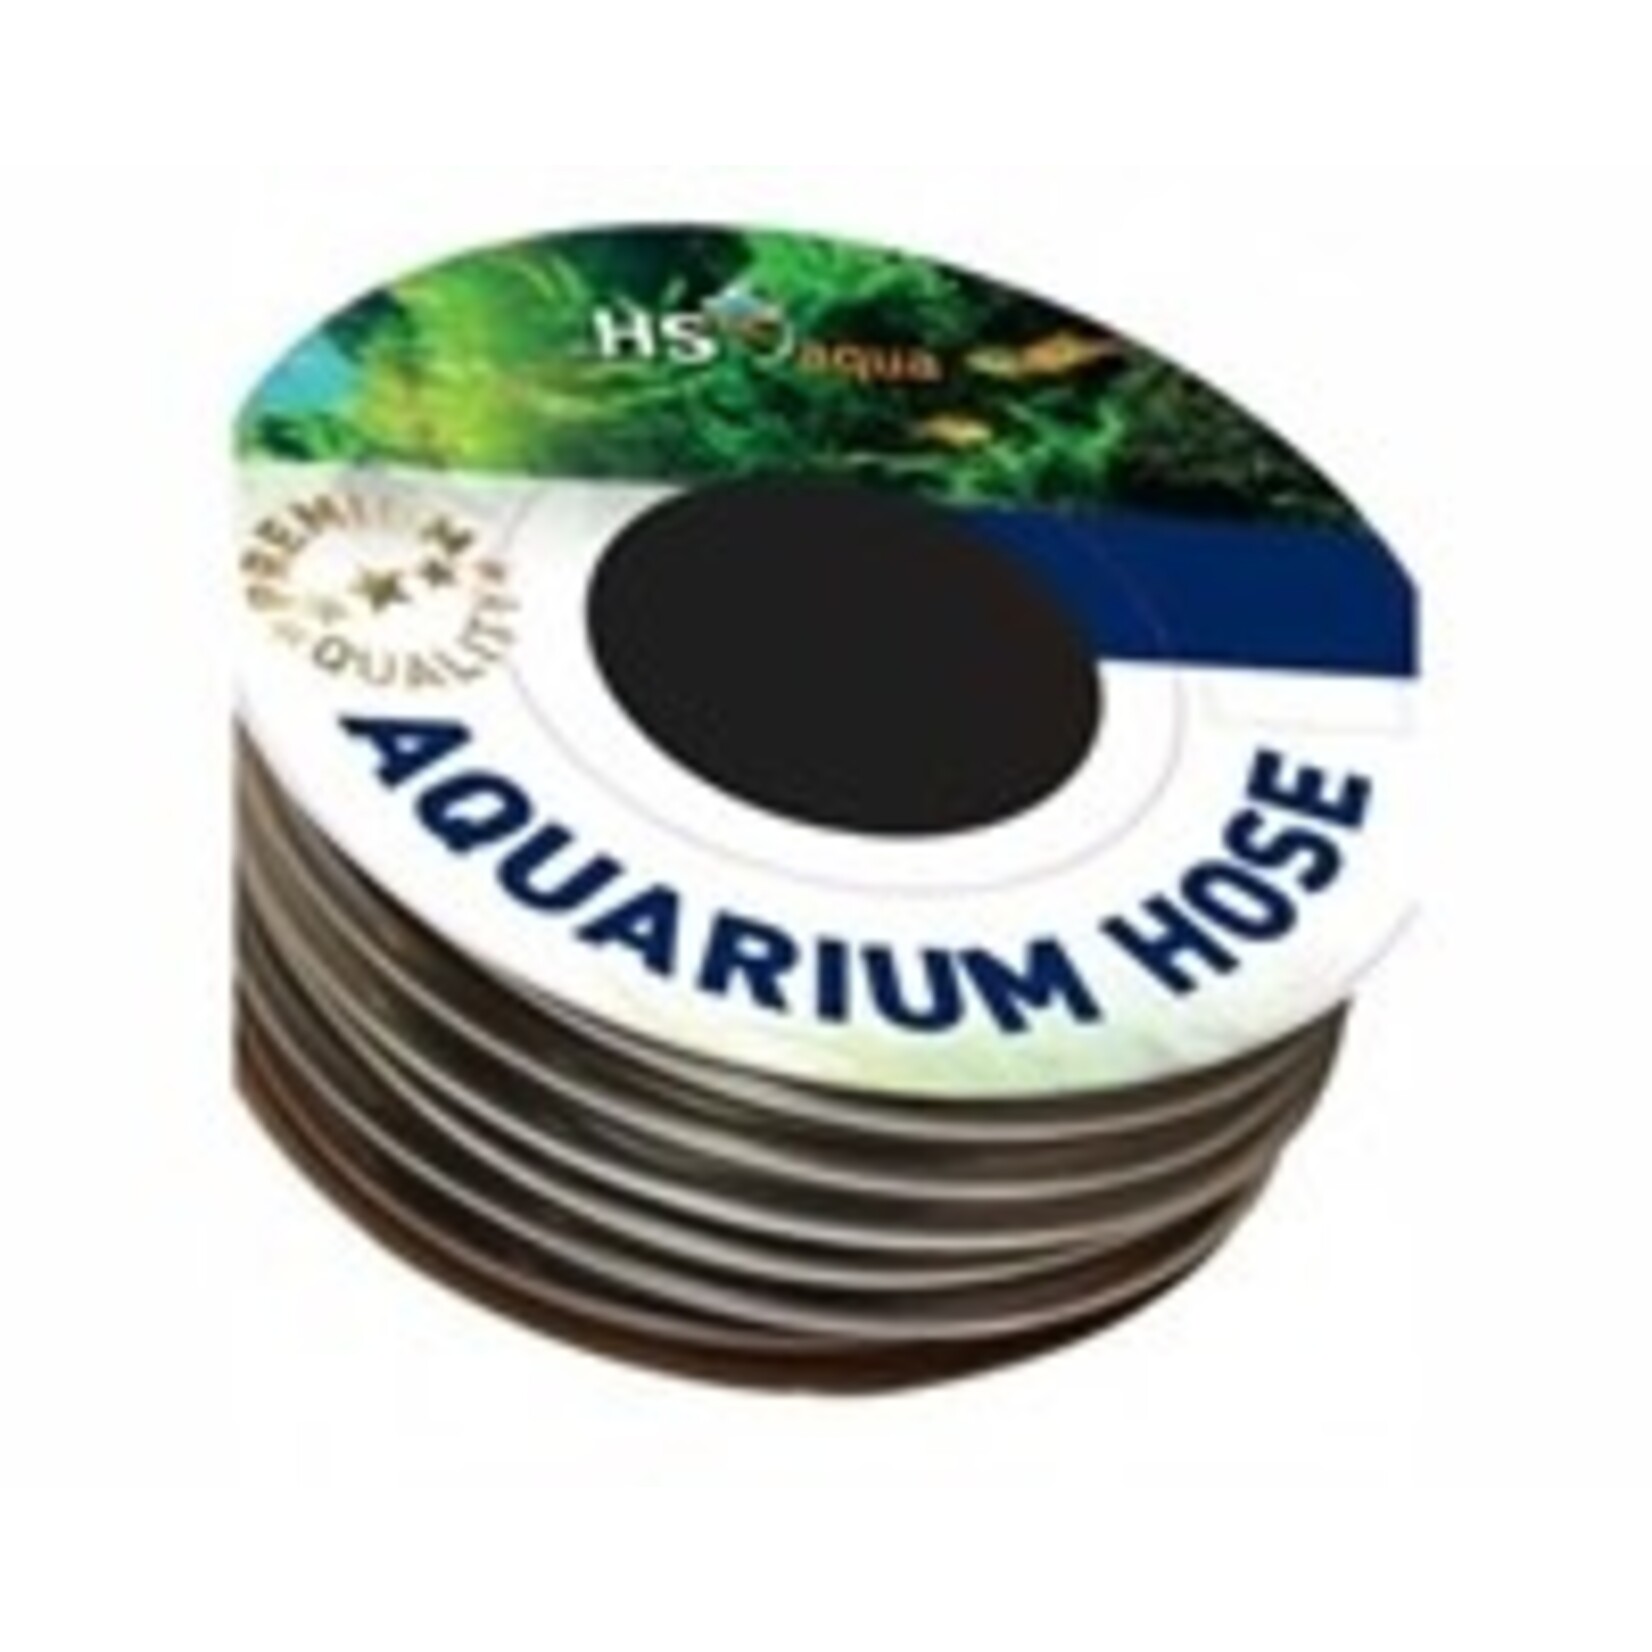 HS Aqua Anthraciet slang 12-16 mm per meter